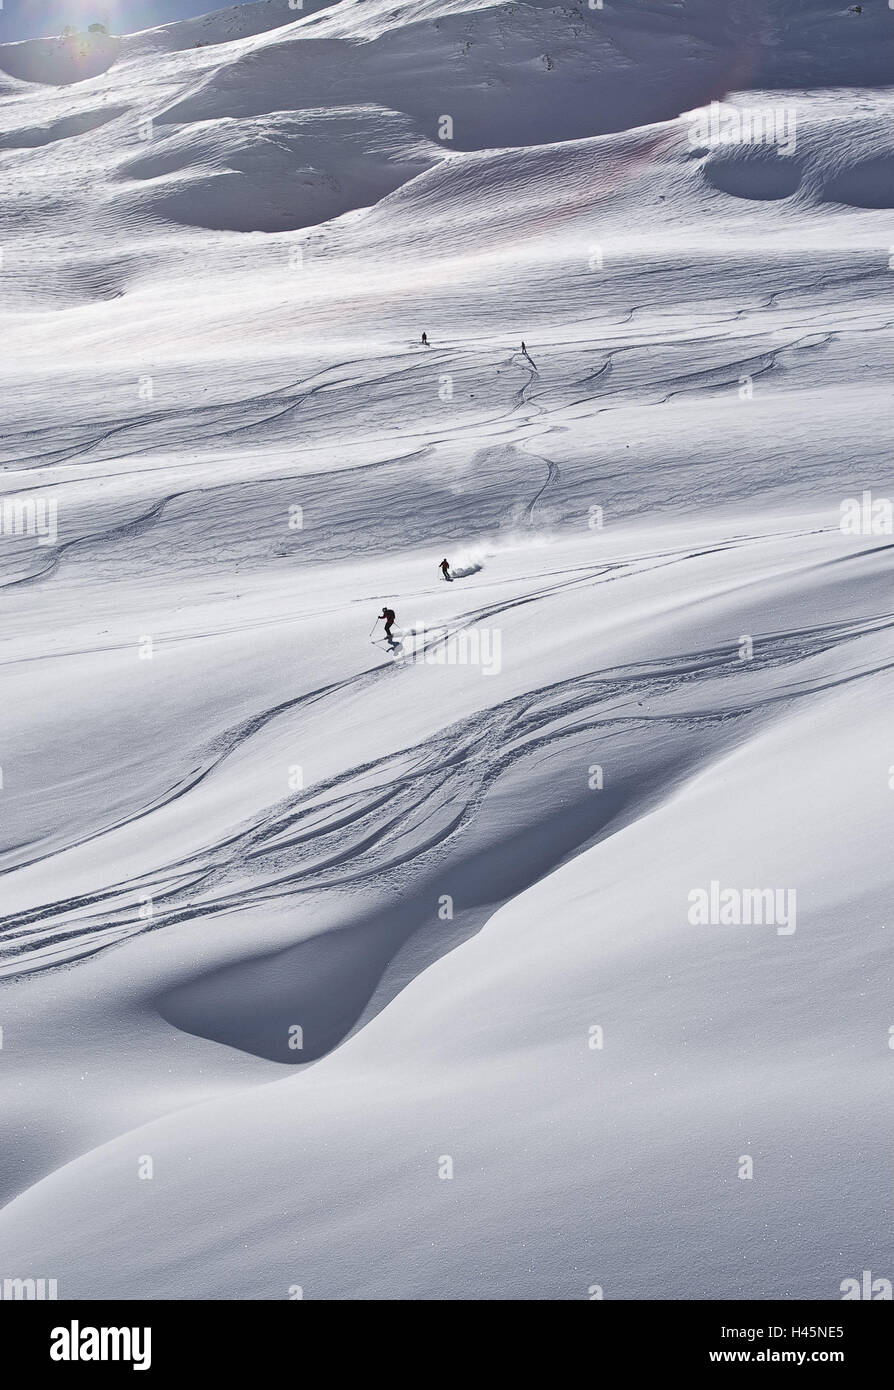 Austria Vorarlberg, inclinazione, neve profonda, sciatore, persona, sport, sport invernali, sci, sci, neve, pista, tracce di freeride, zone sciistiche, piste, bianco, Foto Stock